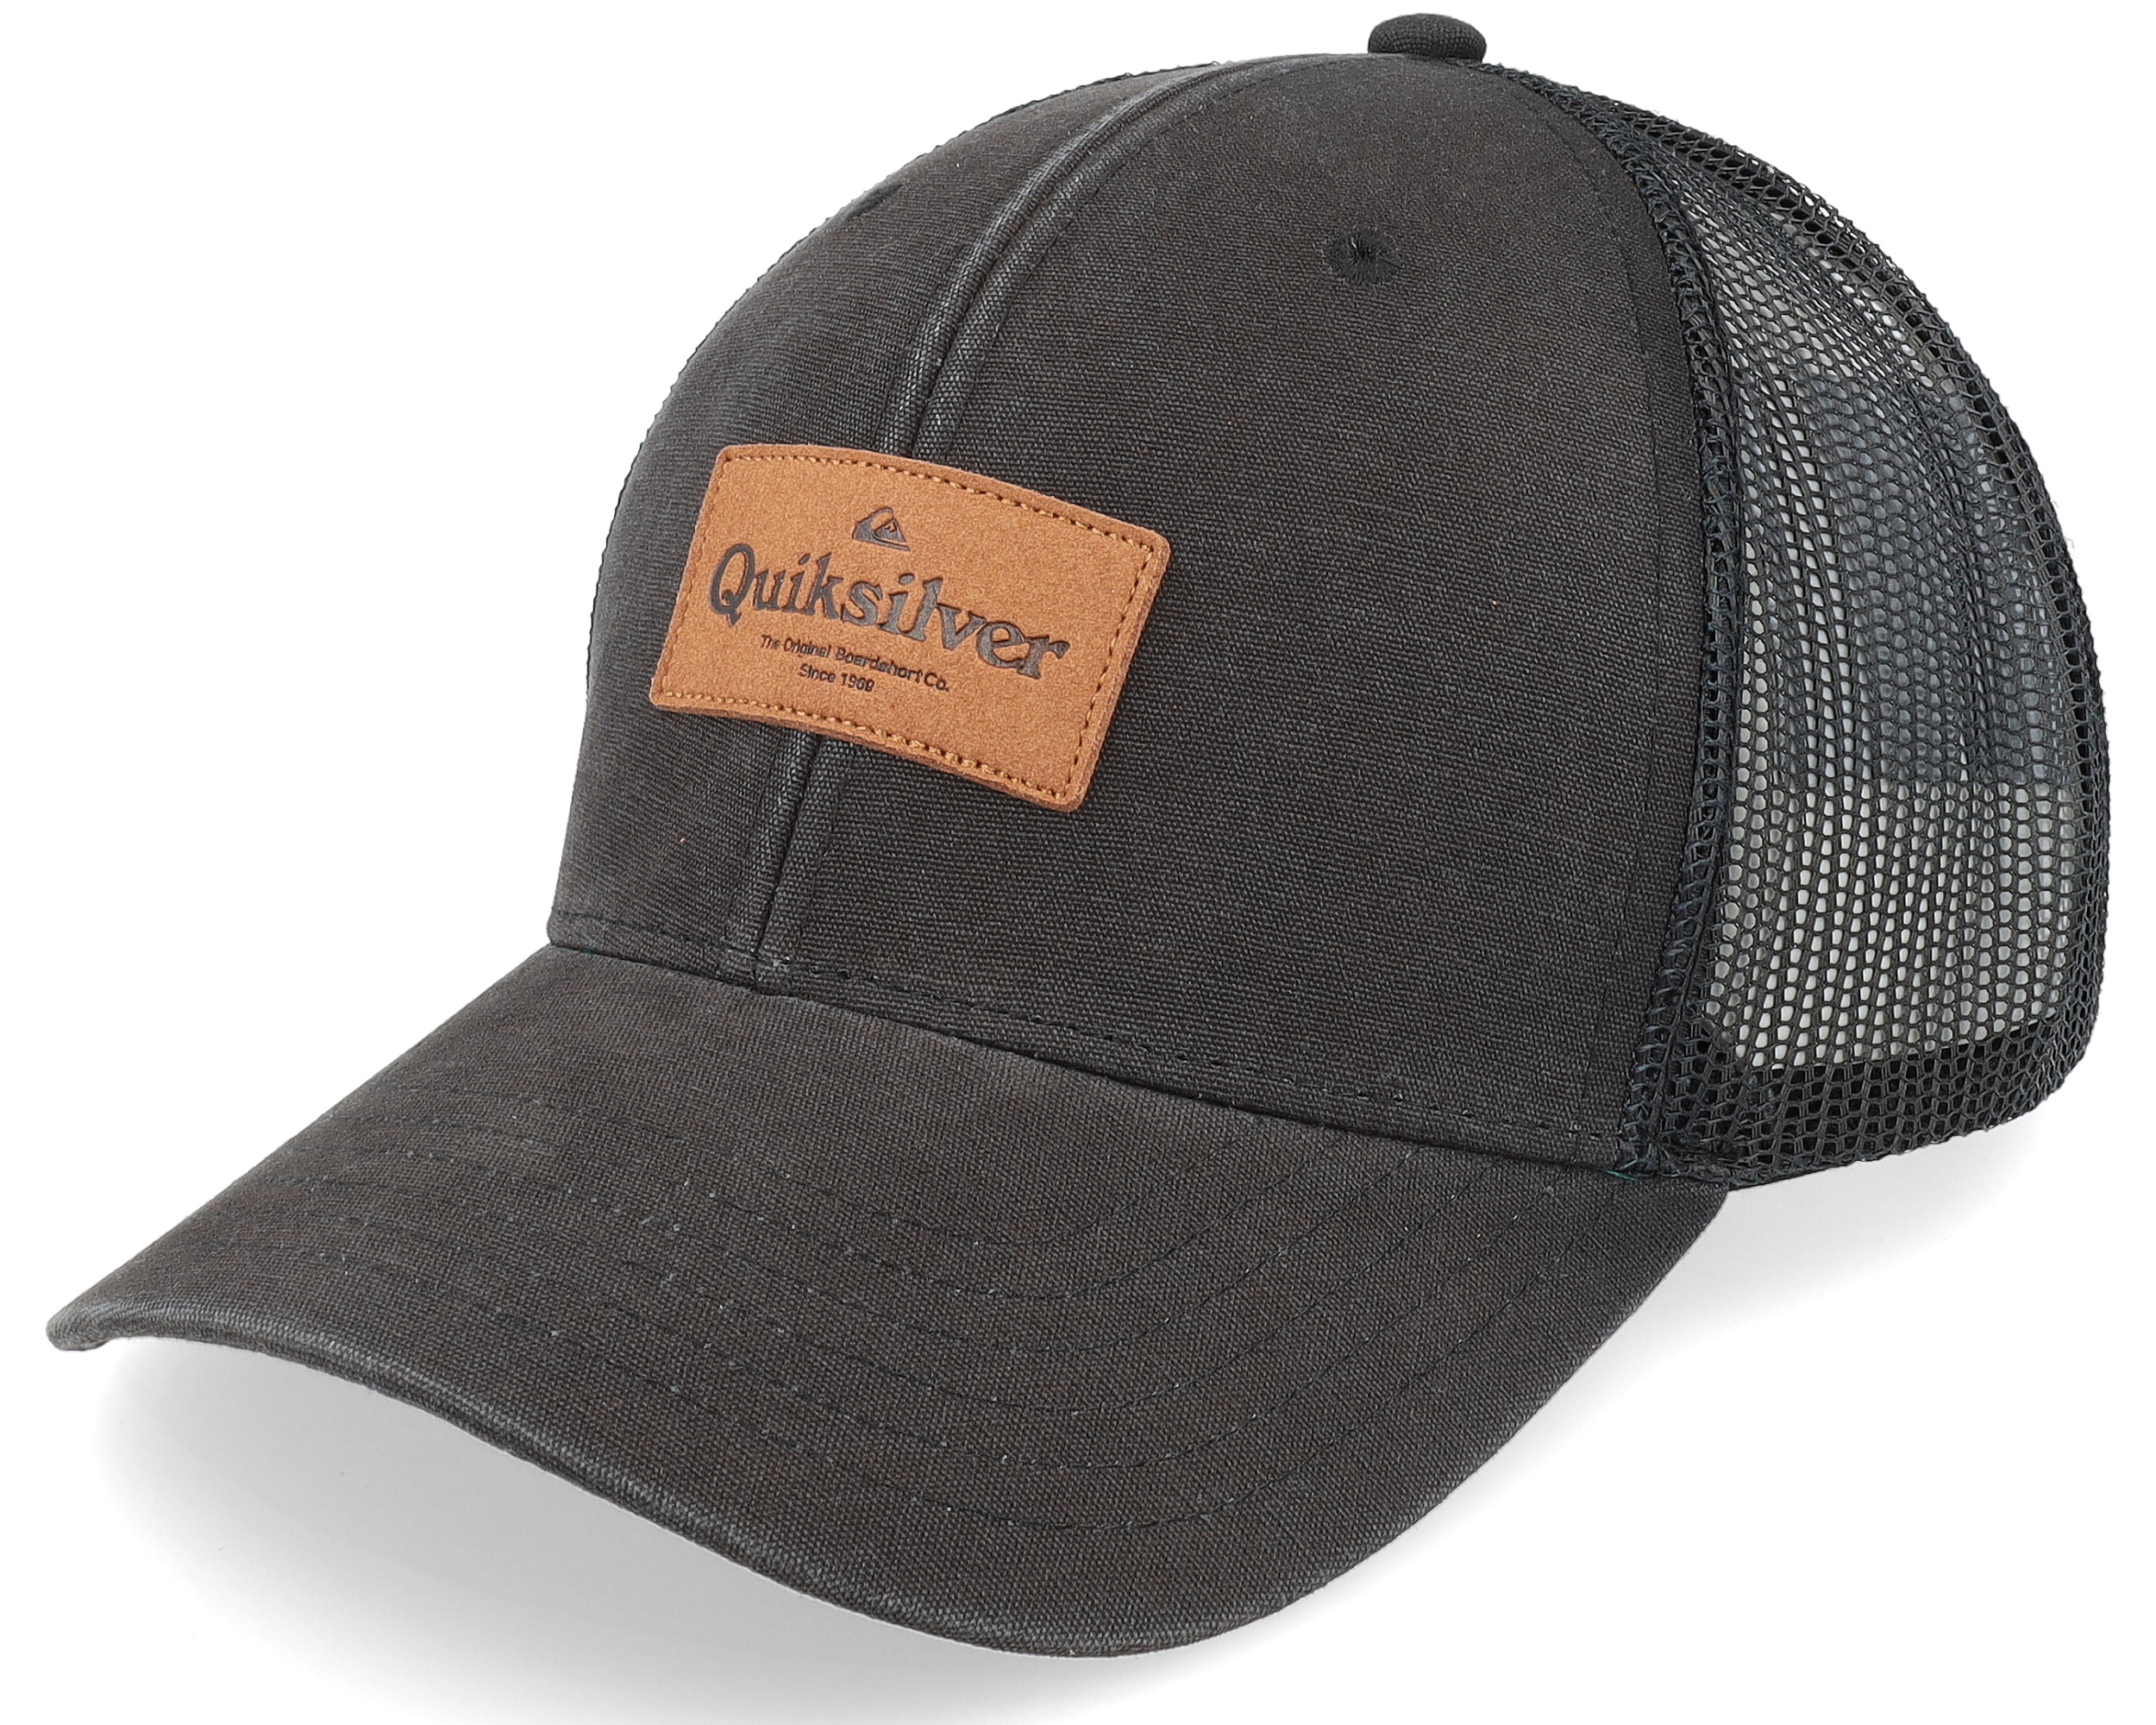 Reek Trucker - Easy Black Quiksilver cap